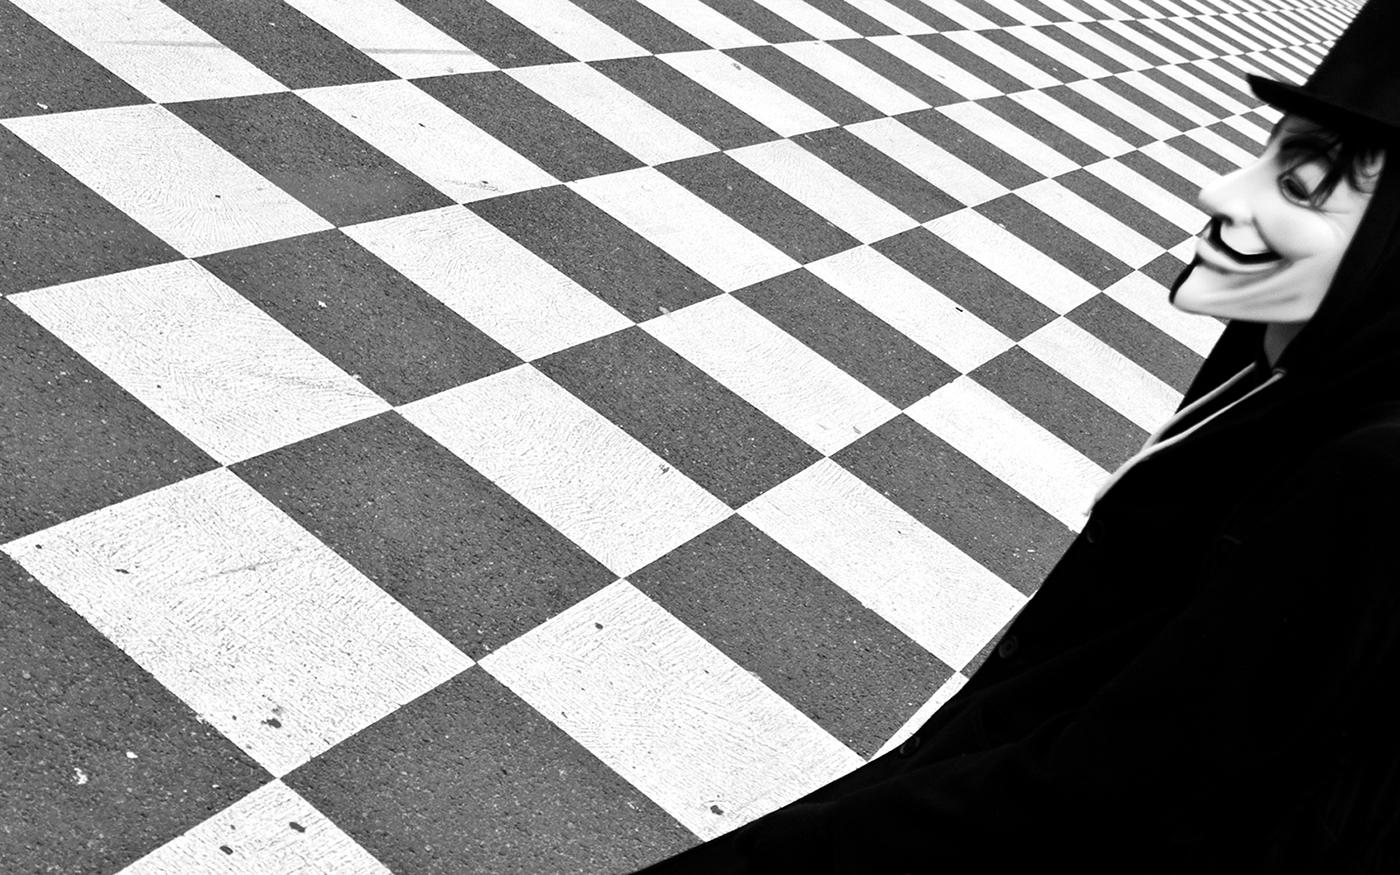 A Game of Chess - Zeitgenössische minimalistische Straßenfotografie, Schwarzweiß